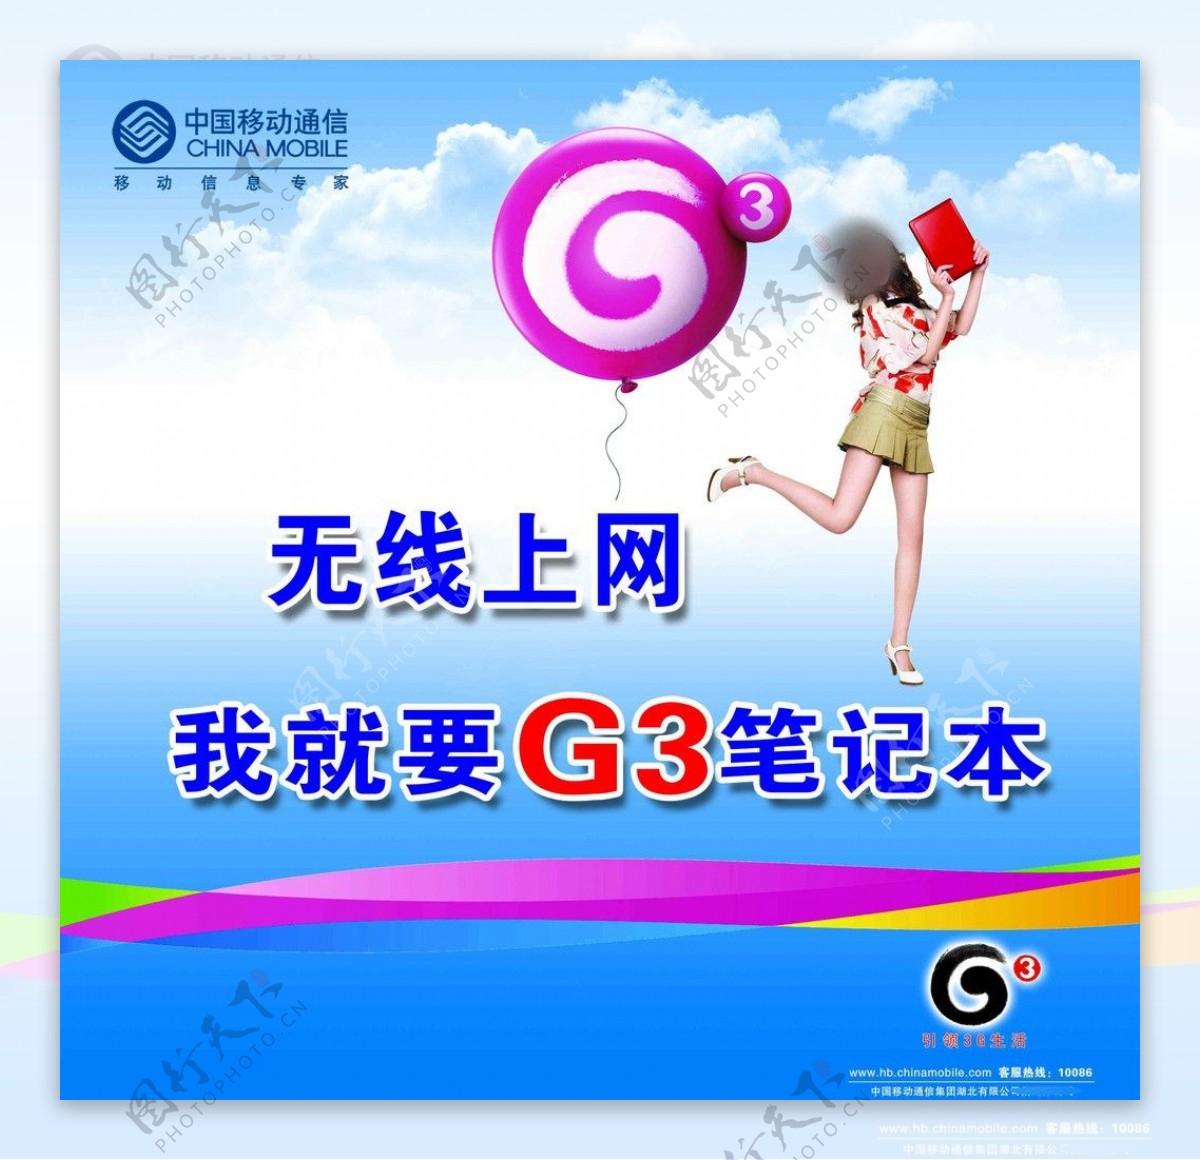 G3无线上网本图片